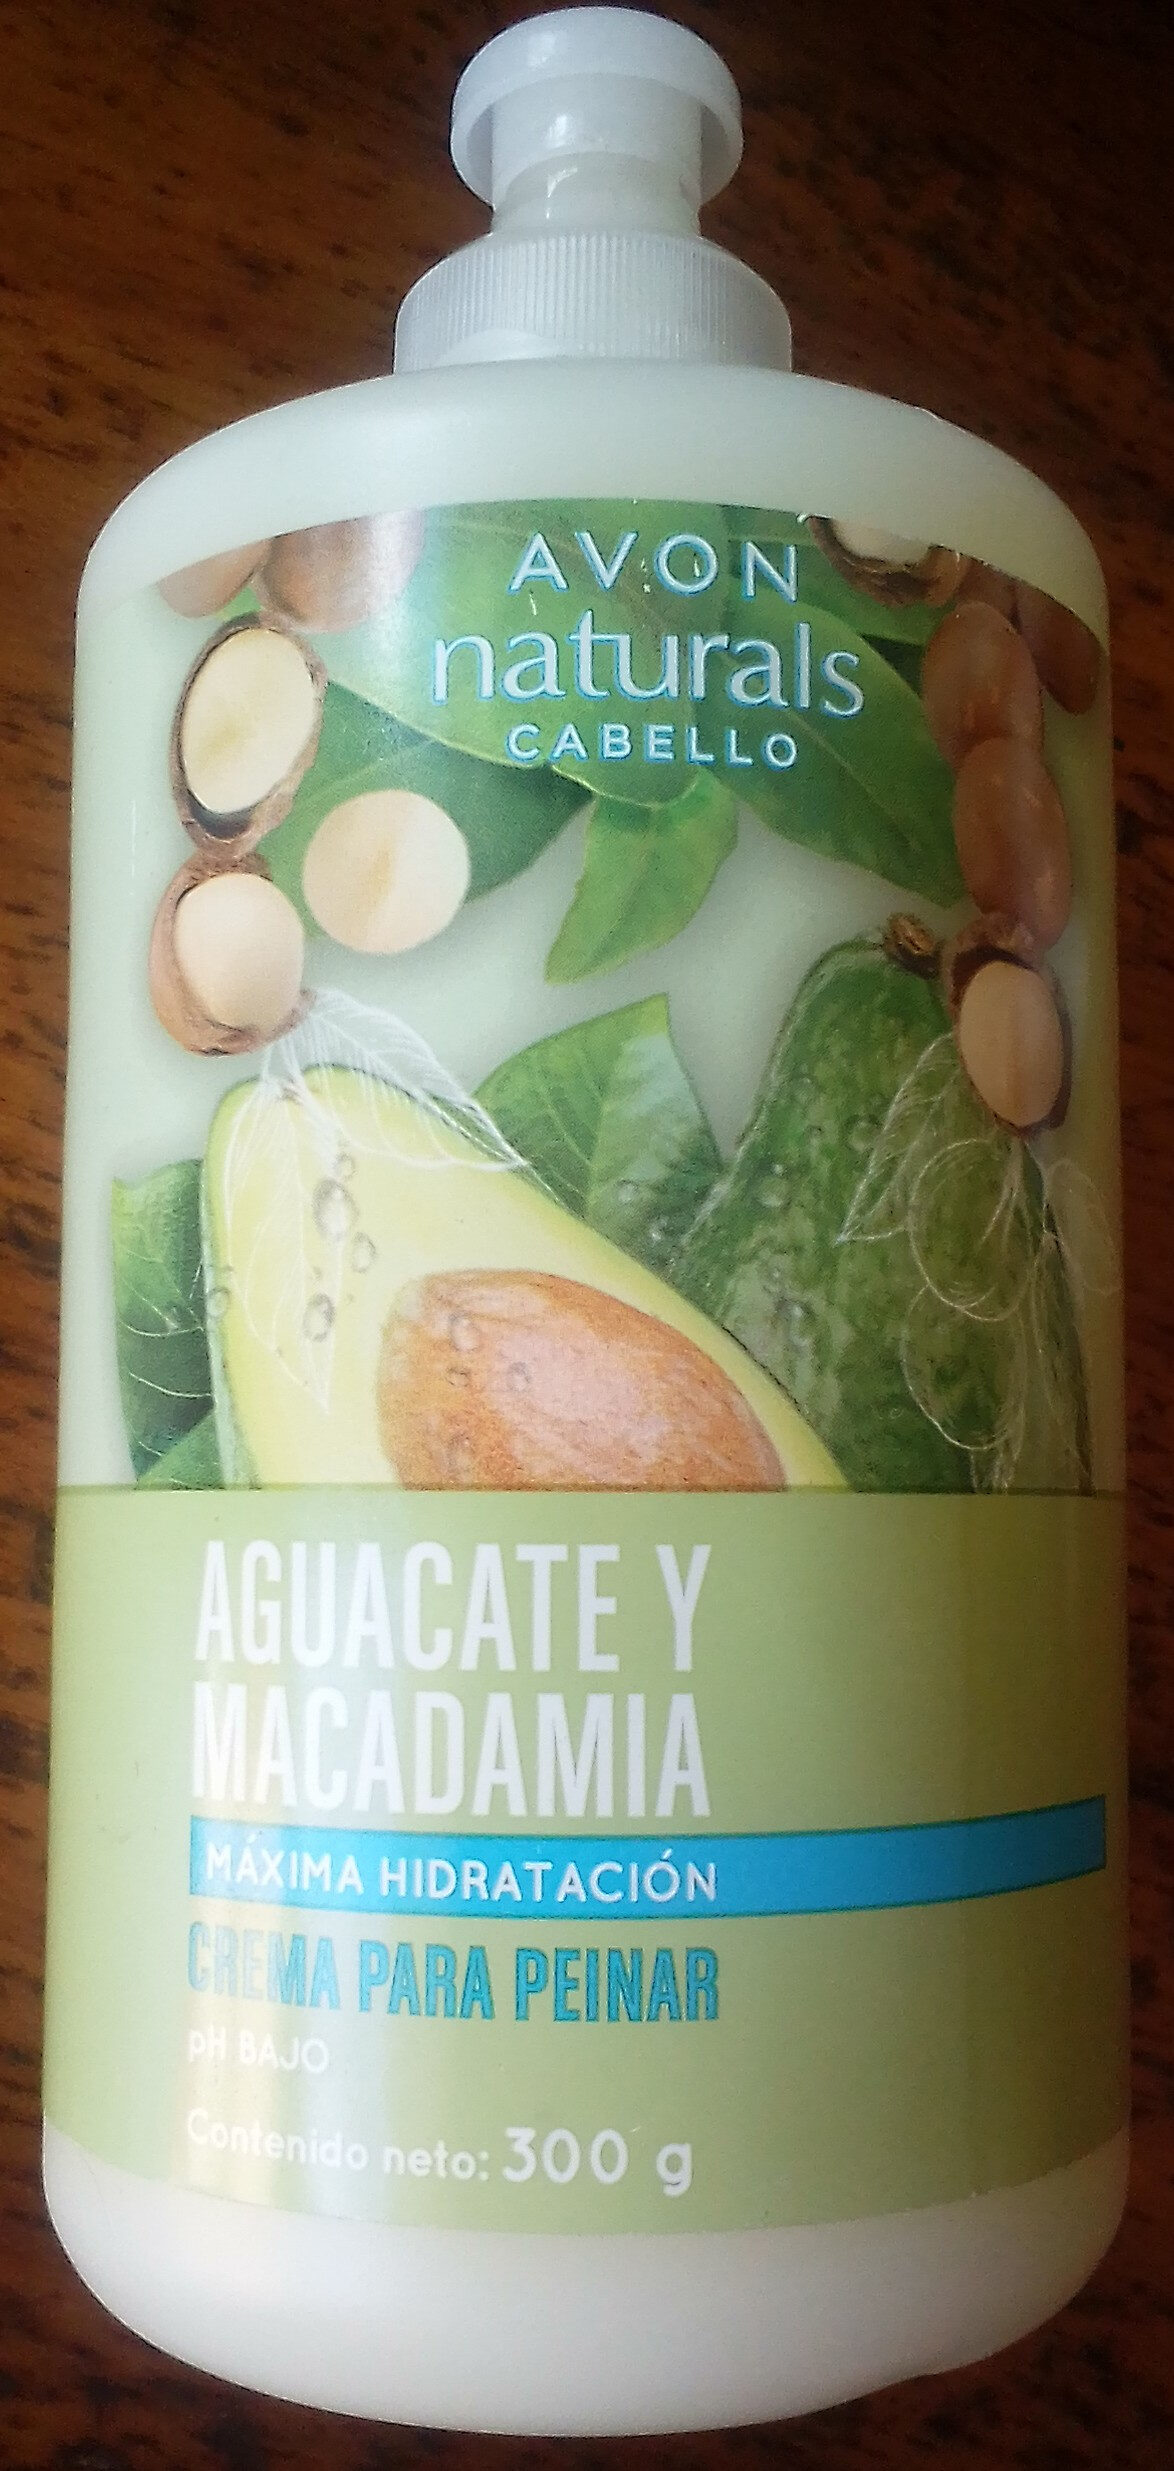 Avon Naturales Cabello Aguacate y Macadamia Maxima Hidratación Crema para Peinar - Product - en